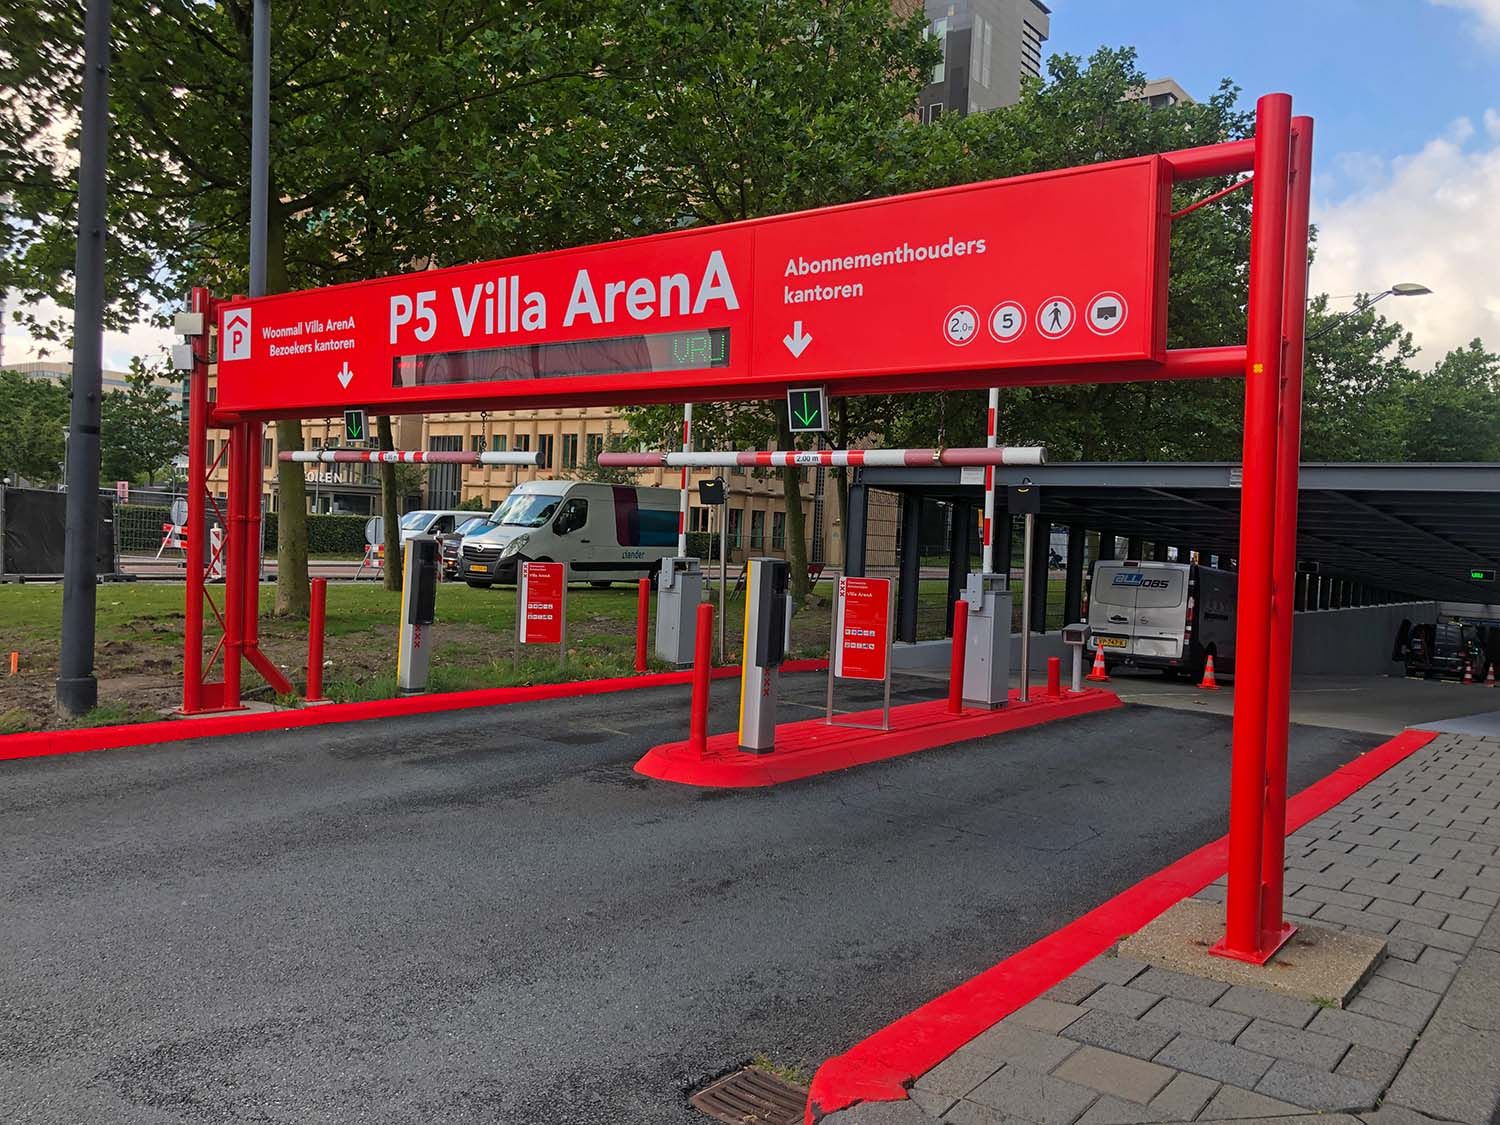 Inrit parkeergarage P5 Villa Arena Gemeente Amsterdam voorzien van inritportaal en inriteiland in huisstijl.